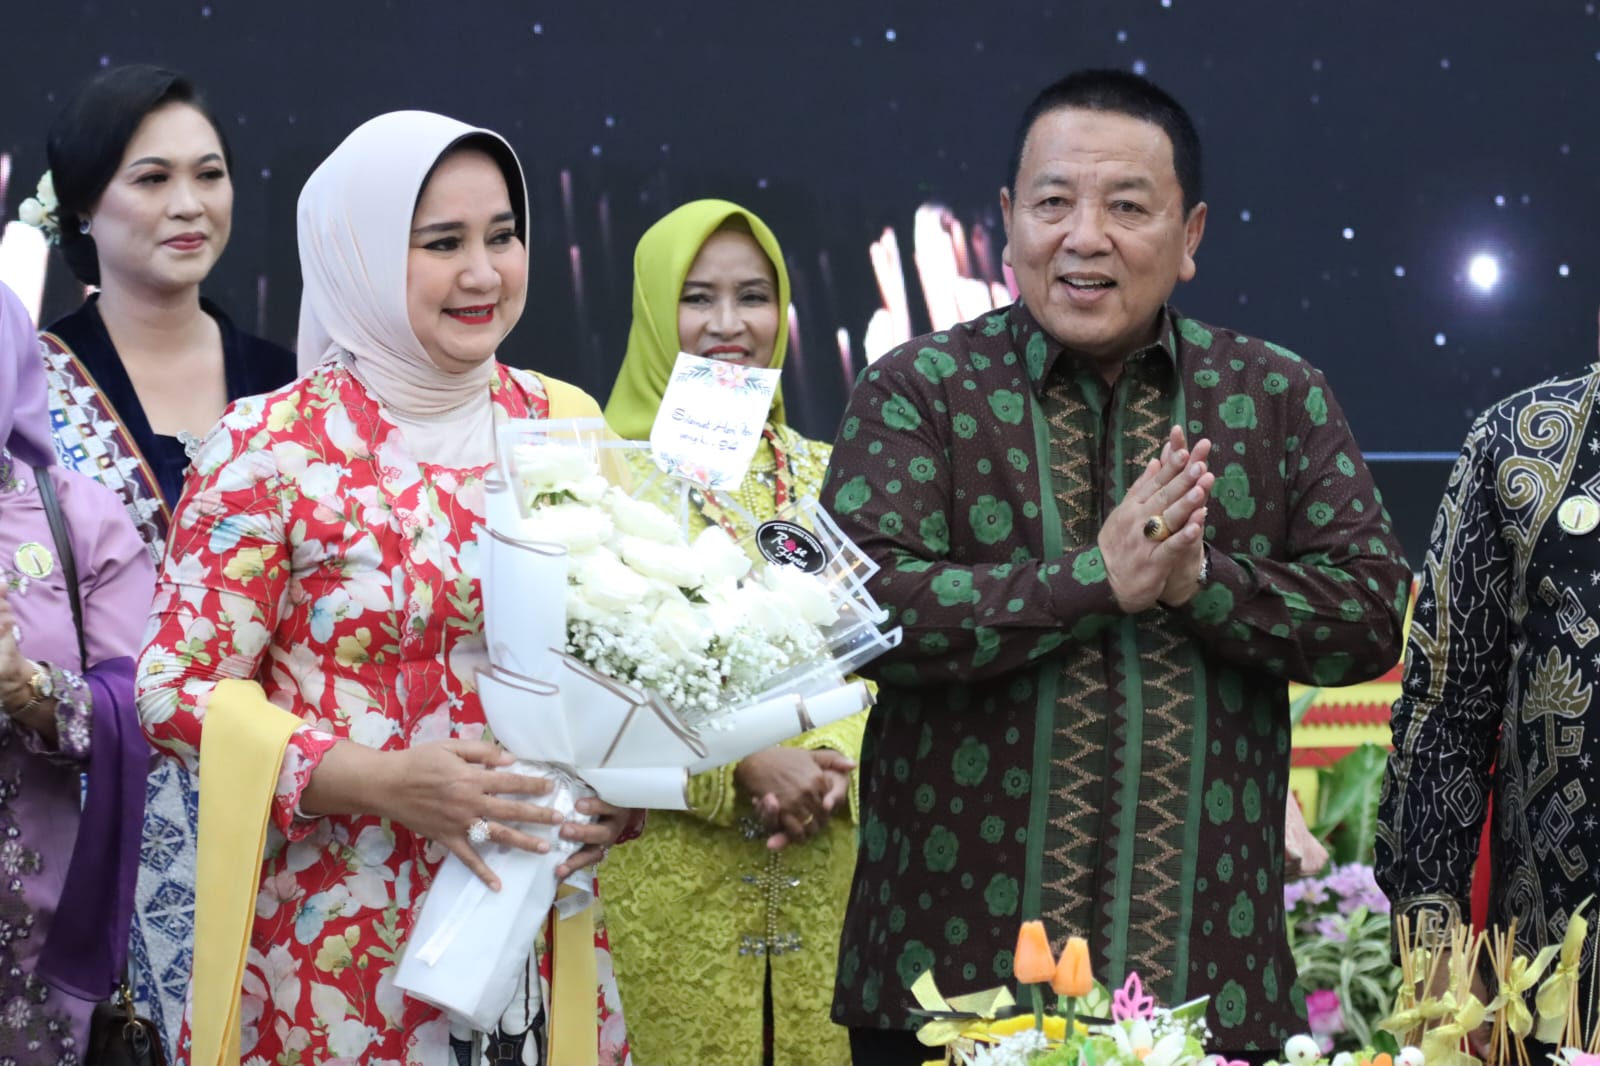 Peringatan Hari Ibu ke-94 Tingkat Provinsi Lampung, Gubernur Arinal Ajak Kaum Perempuan Tingkatkan Semangat Juang Dalam Membangun Daerah Lampung